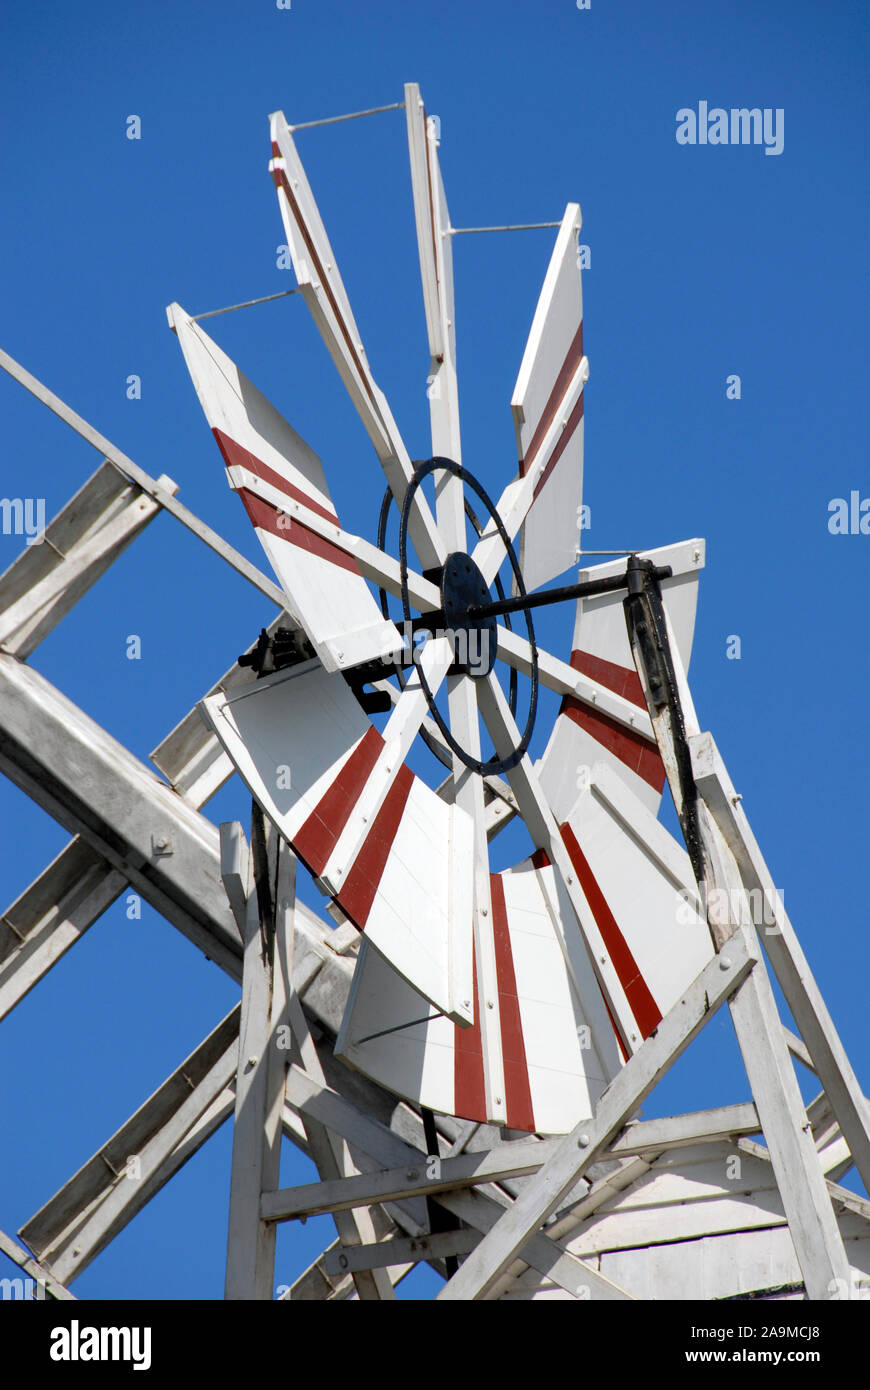 Petites lames pour former un rotor pour tourner la tête d'un moulin à vent, Thurne, Norfolk, Angleterre Banque D'Images